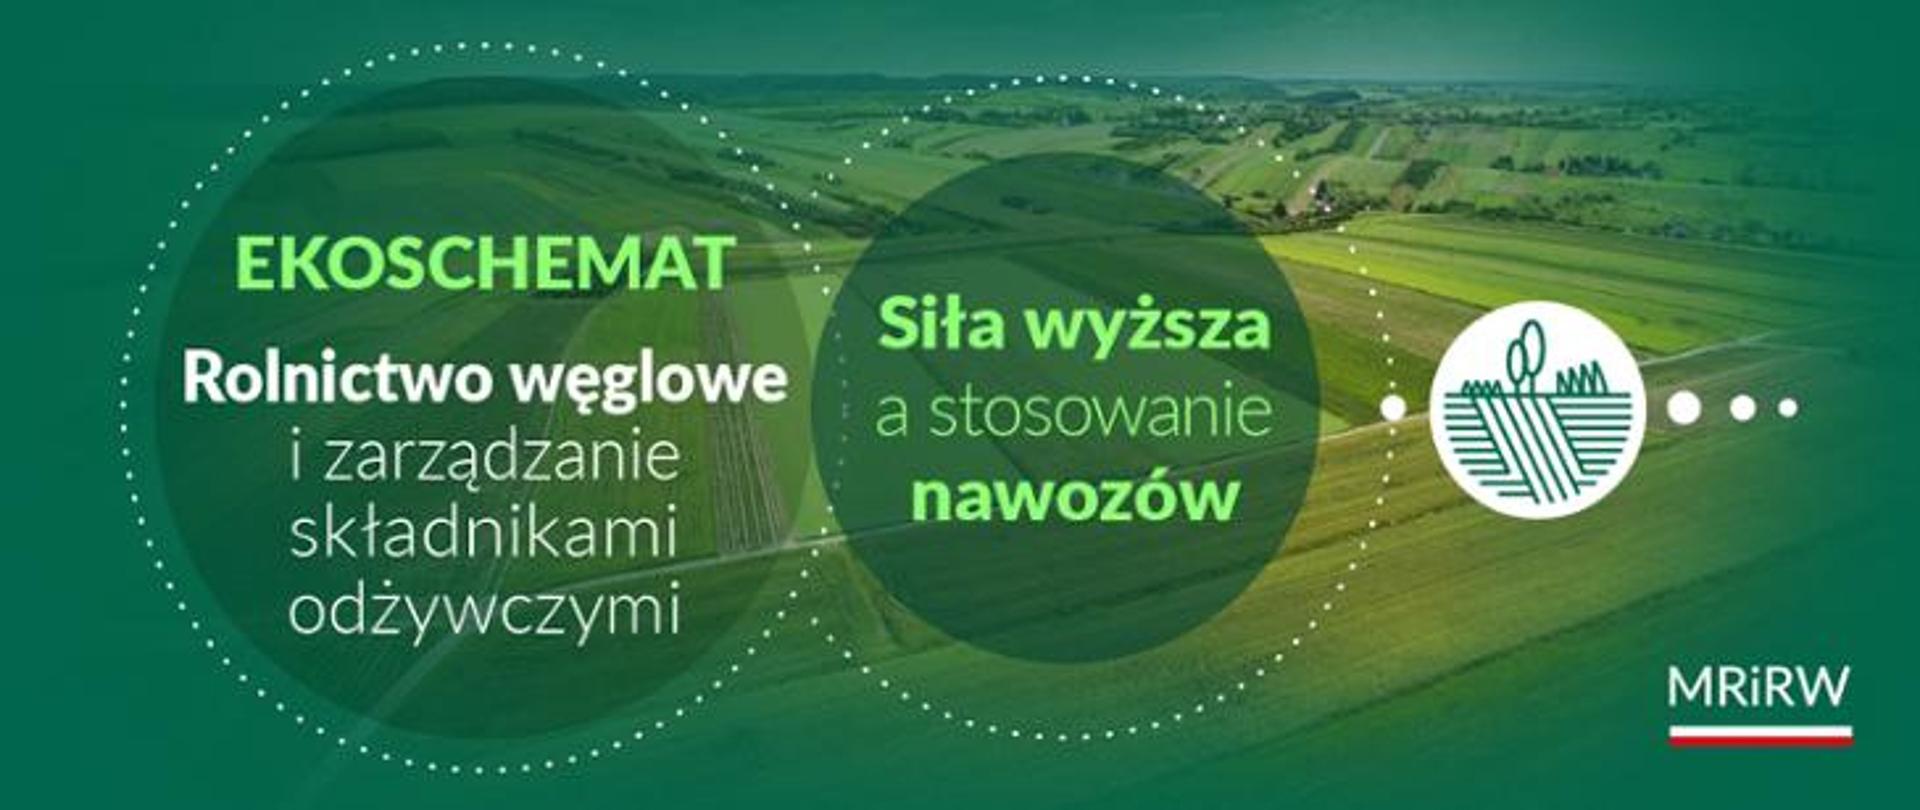 ekoschemat_rolnictwo_węglowe